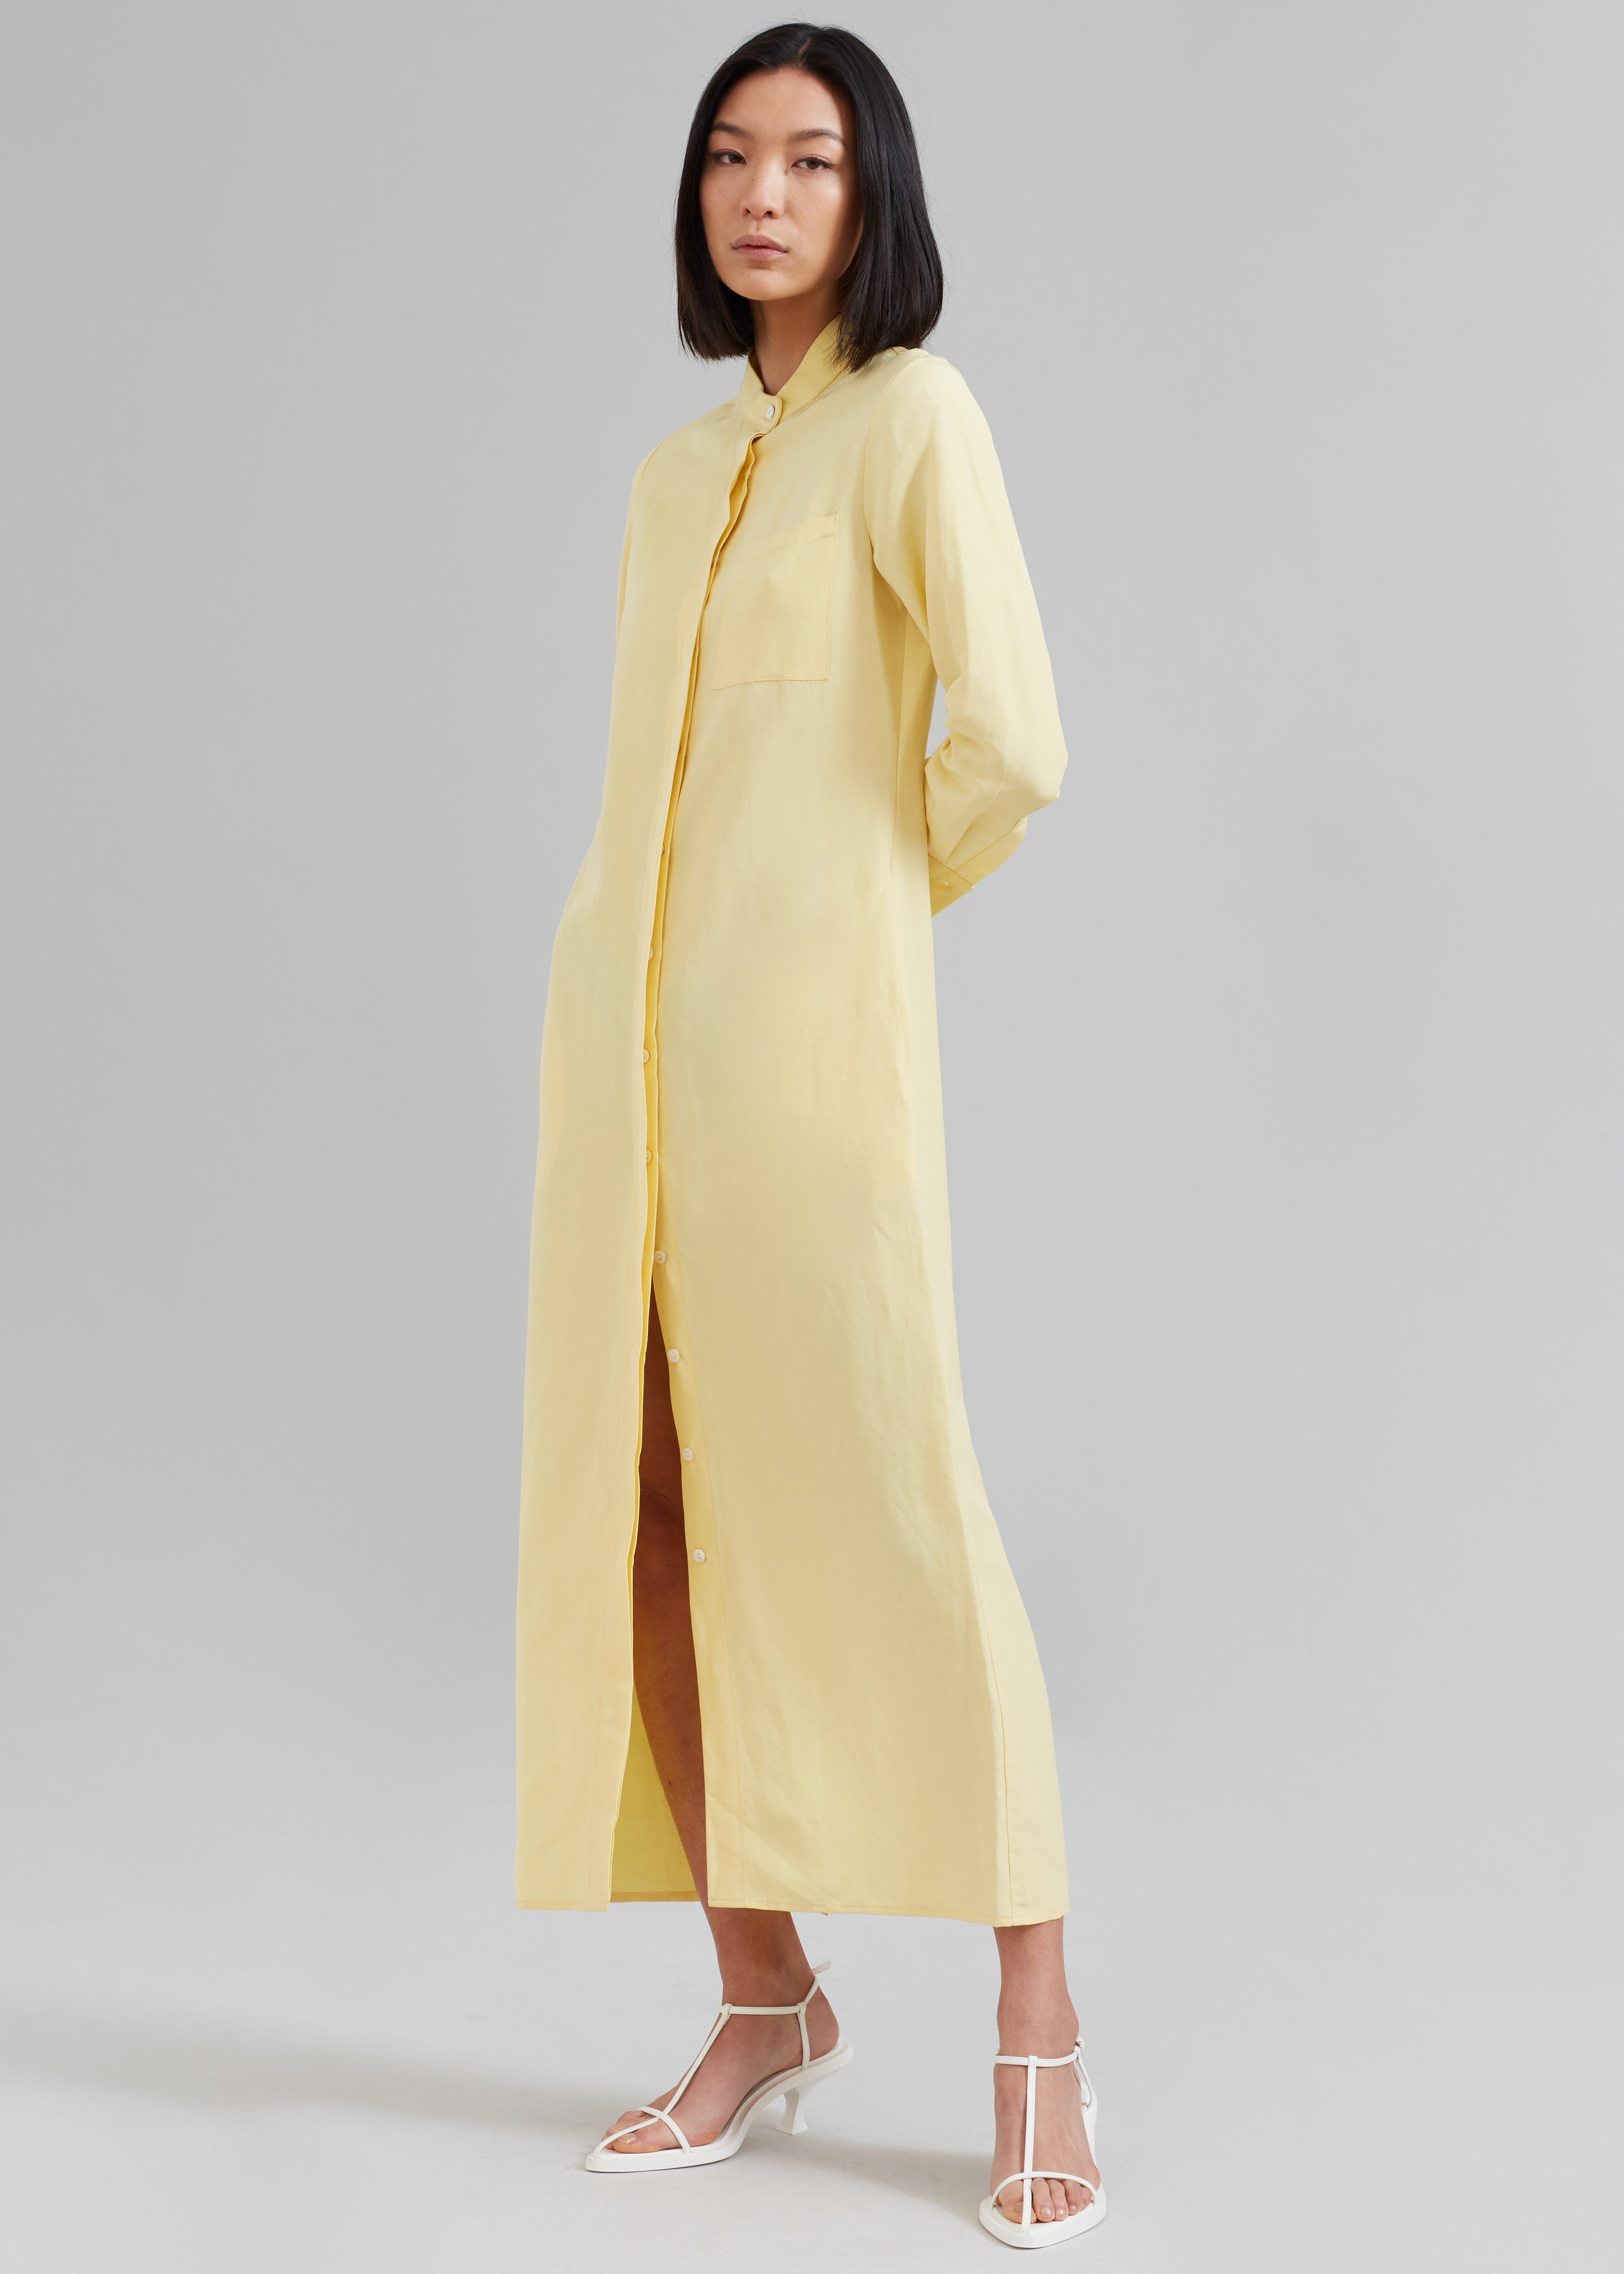 MATIN Collarless Shirt Dress - Butter – Frankie Shop Europe